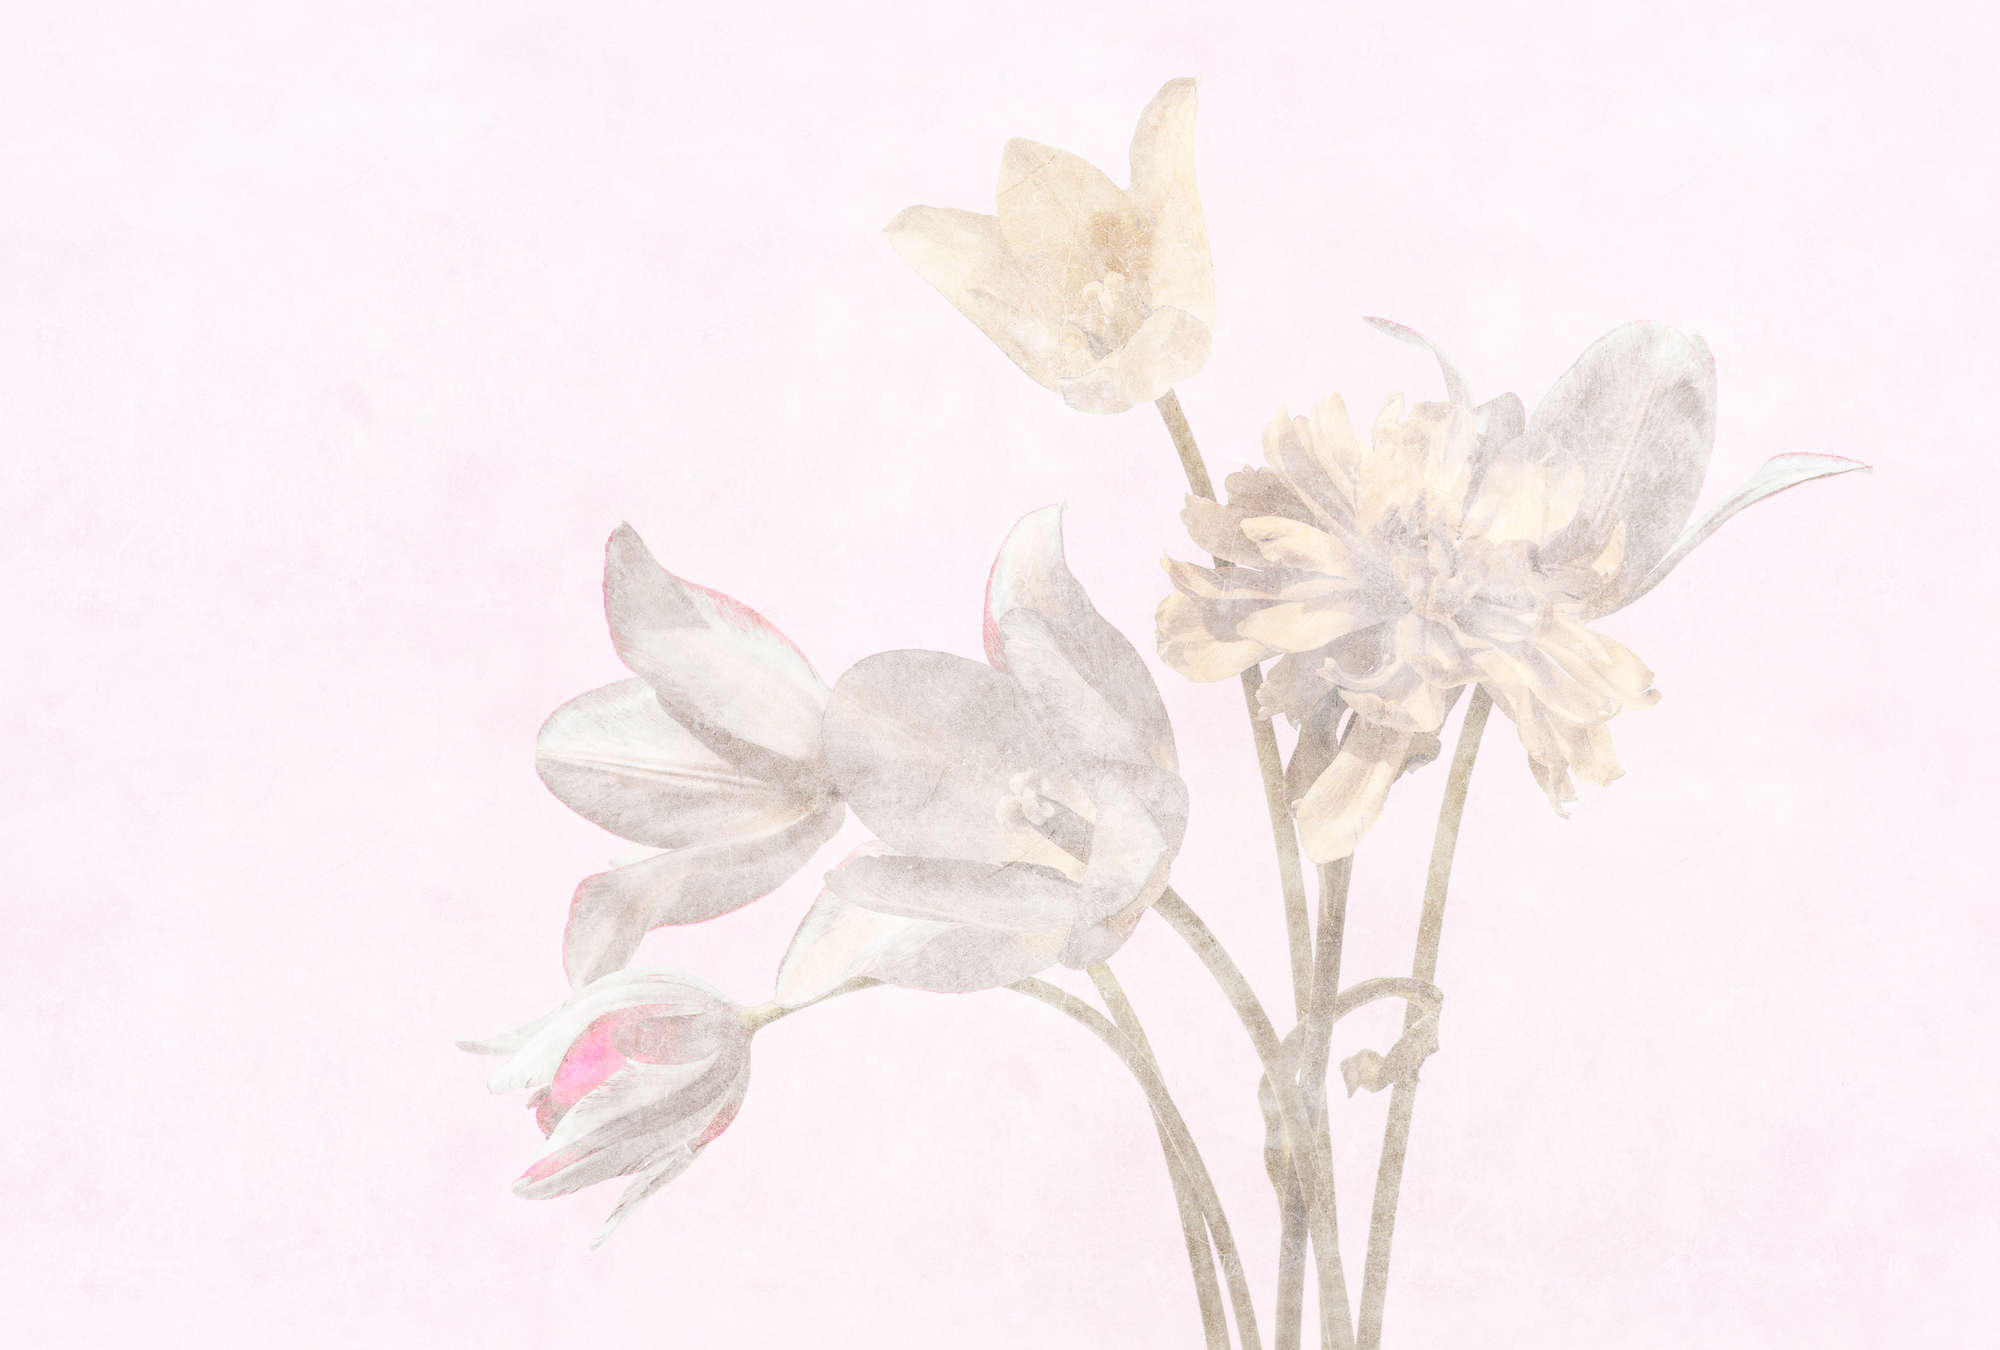             Morning Room 1 – Blumen Fototapete Blüten im verblassten Stil
        